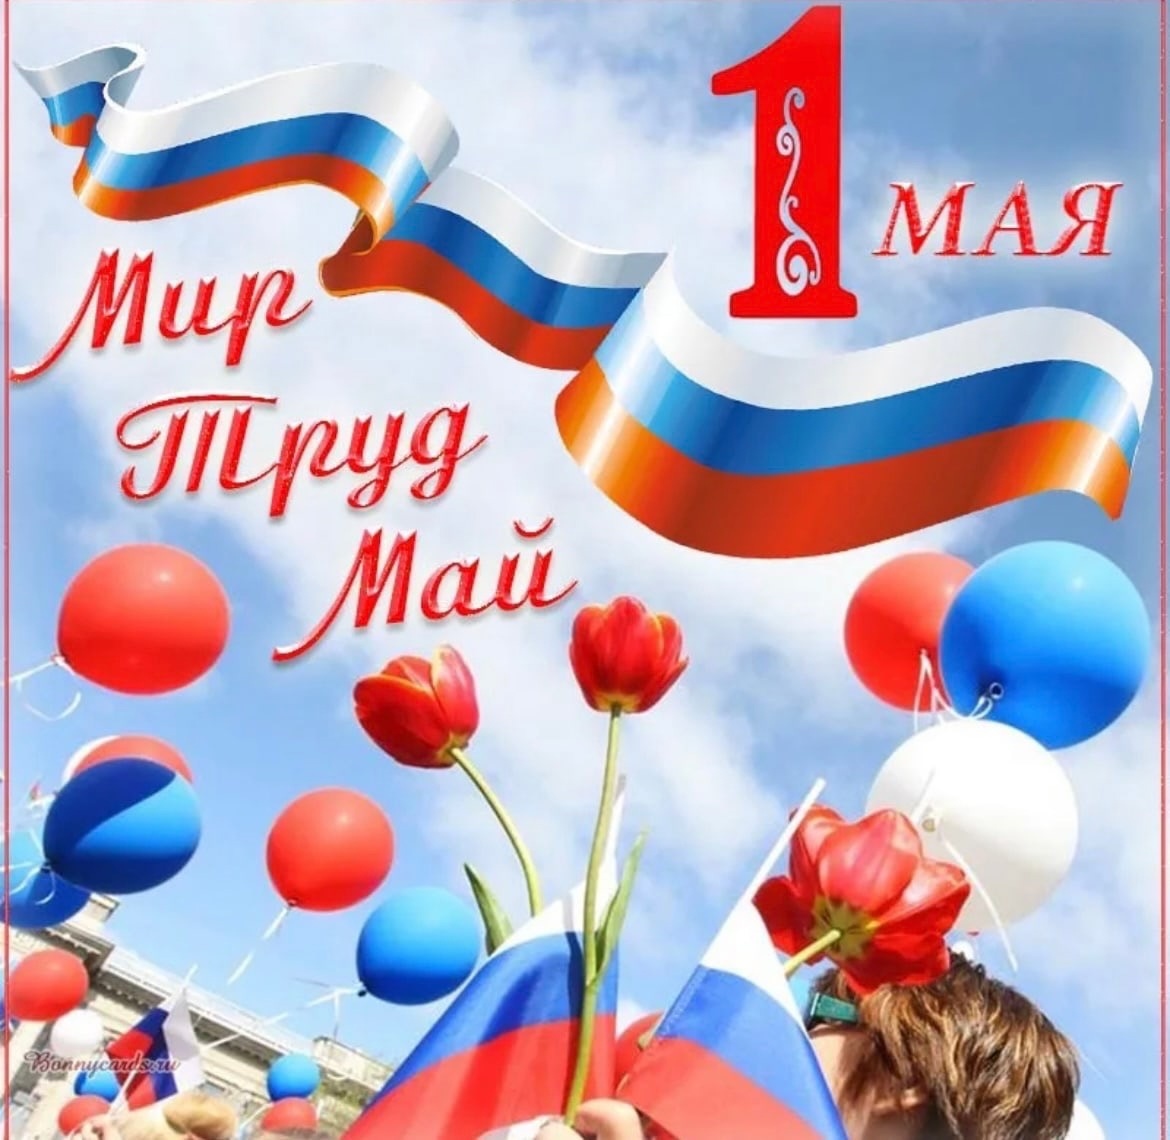 1 мая в Российской Федерации отмечают Праздник Весны и Труда.